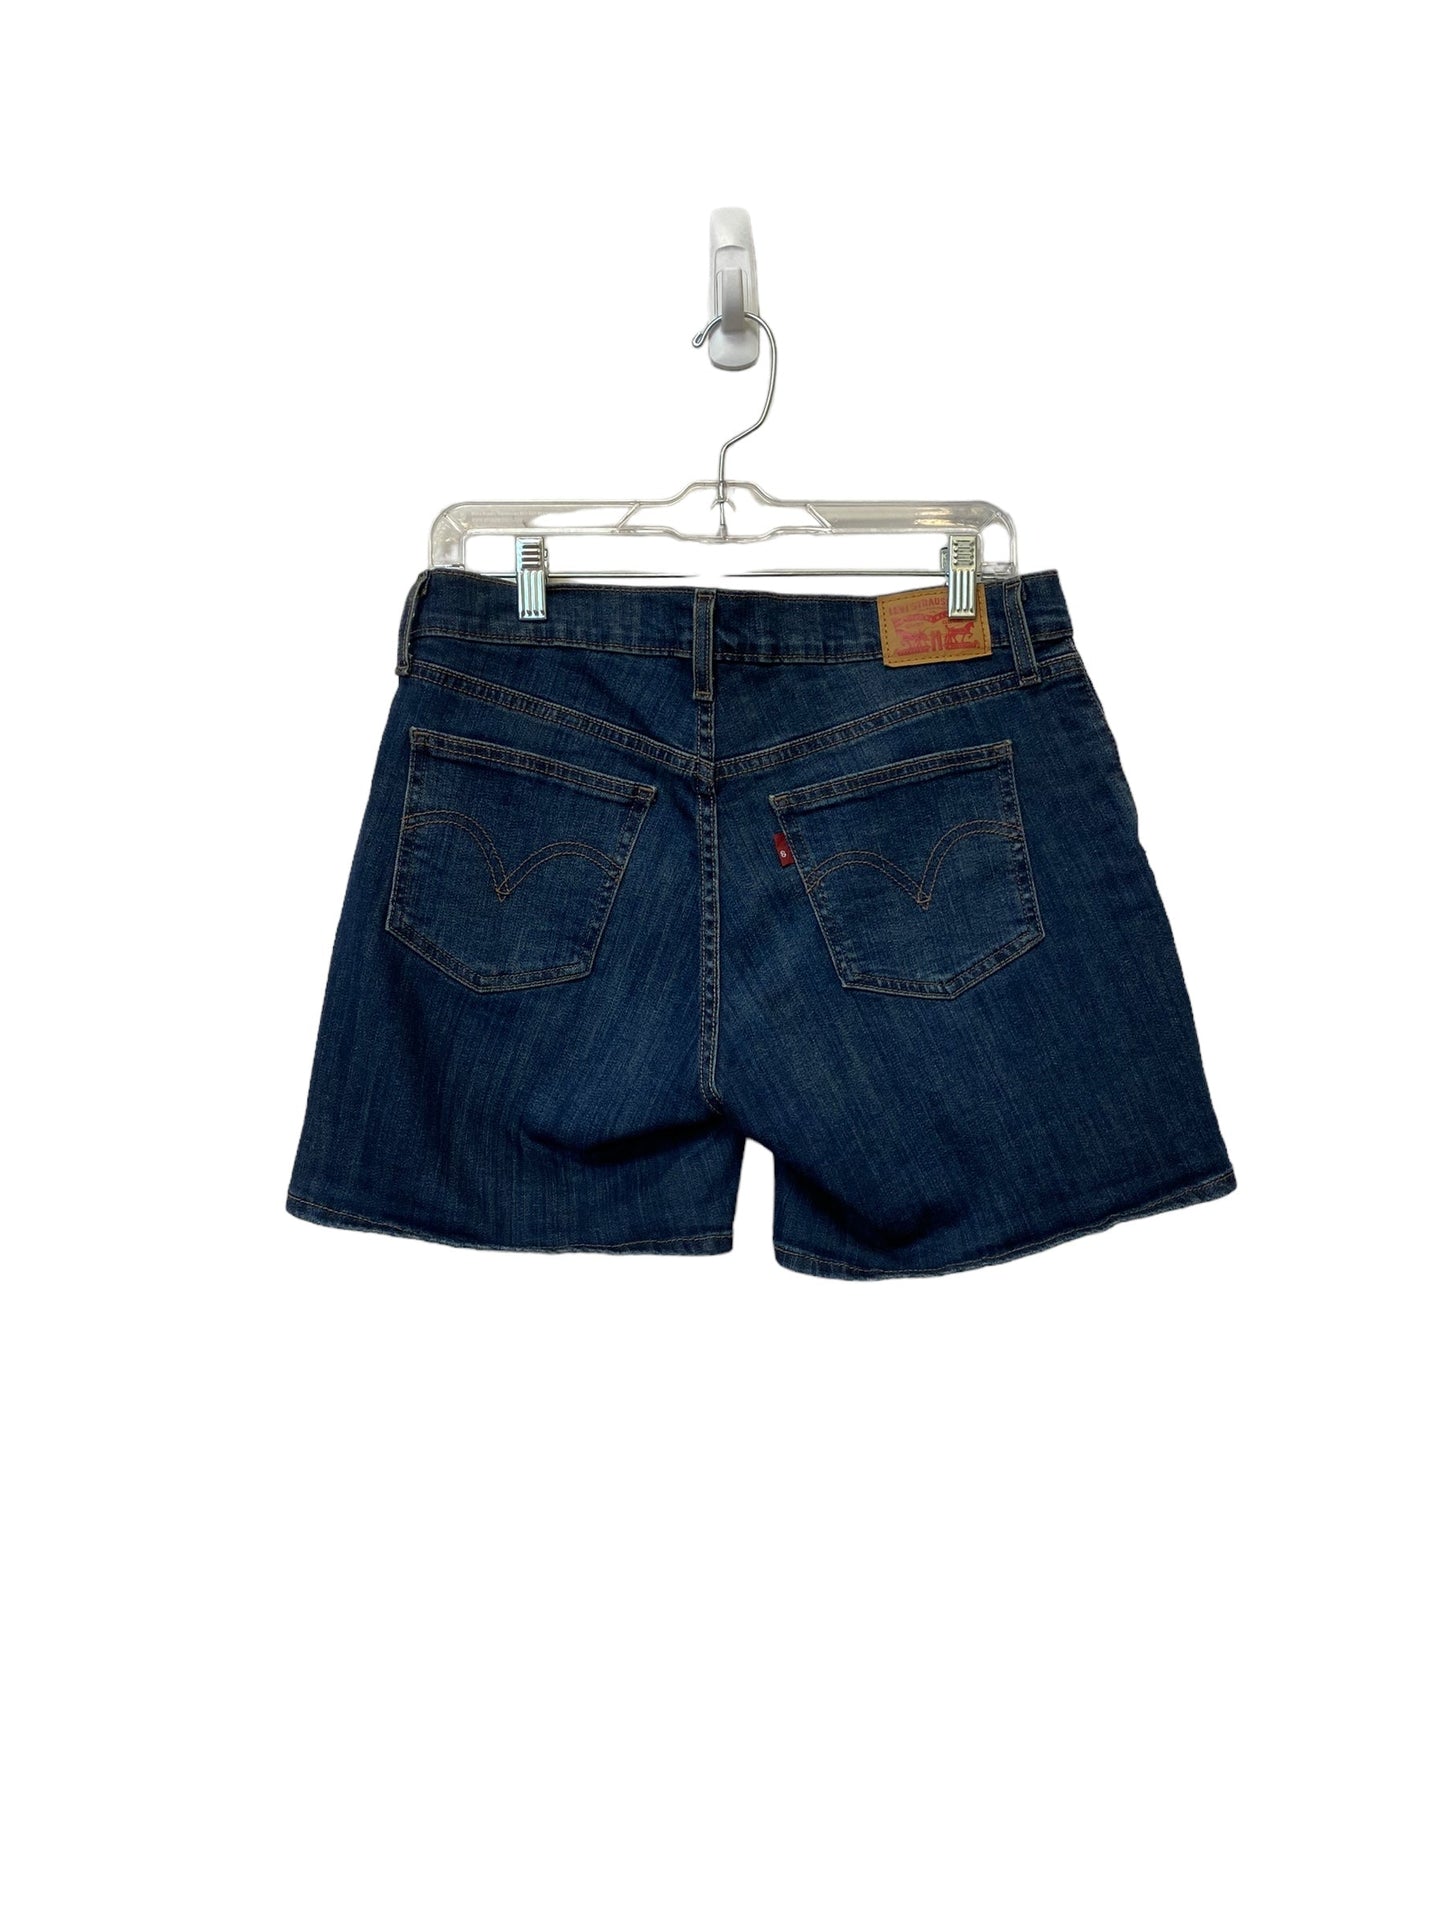 Blue Denim Shorts Levis, Size 30